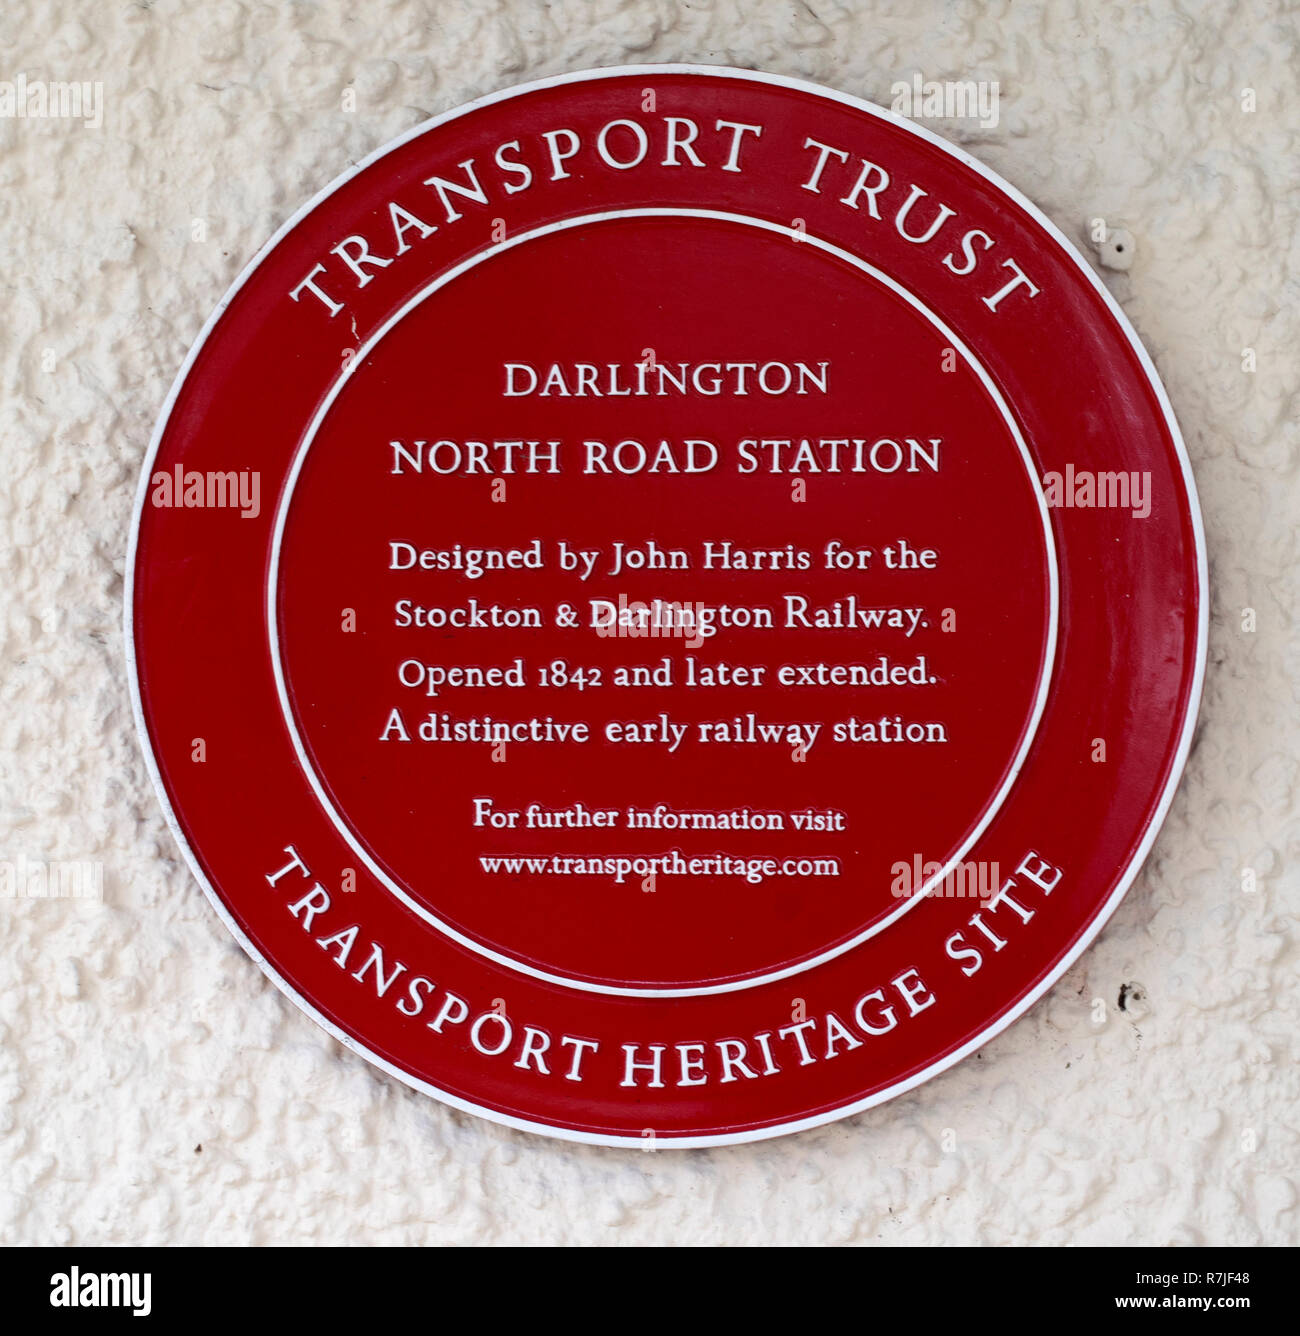 Fiducie du patrimoine de transport rouge plaque à Darlington, North Road Station, Darlington, County Durham, England, UK. Banque D'Images